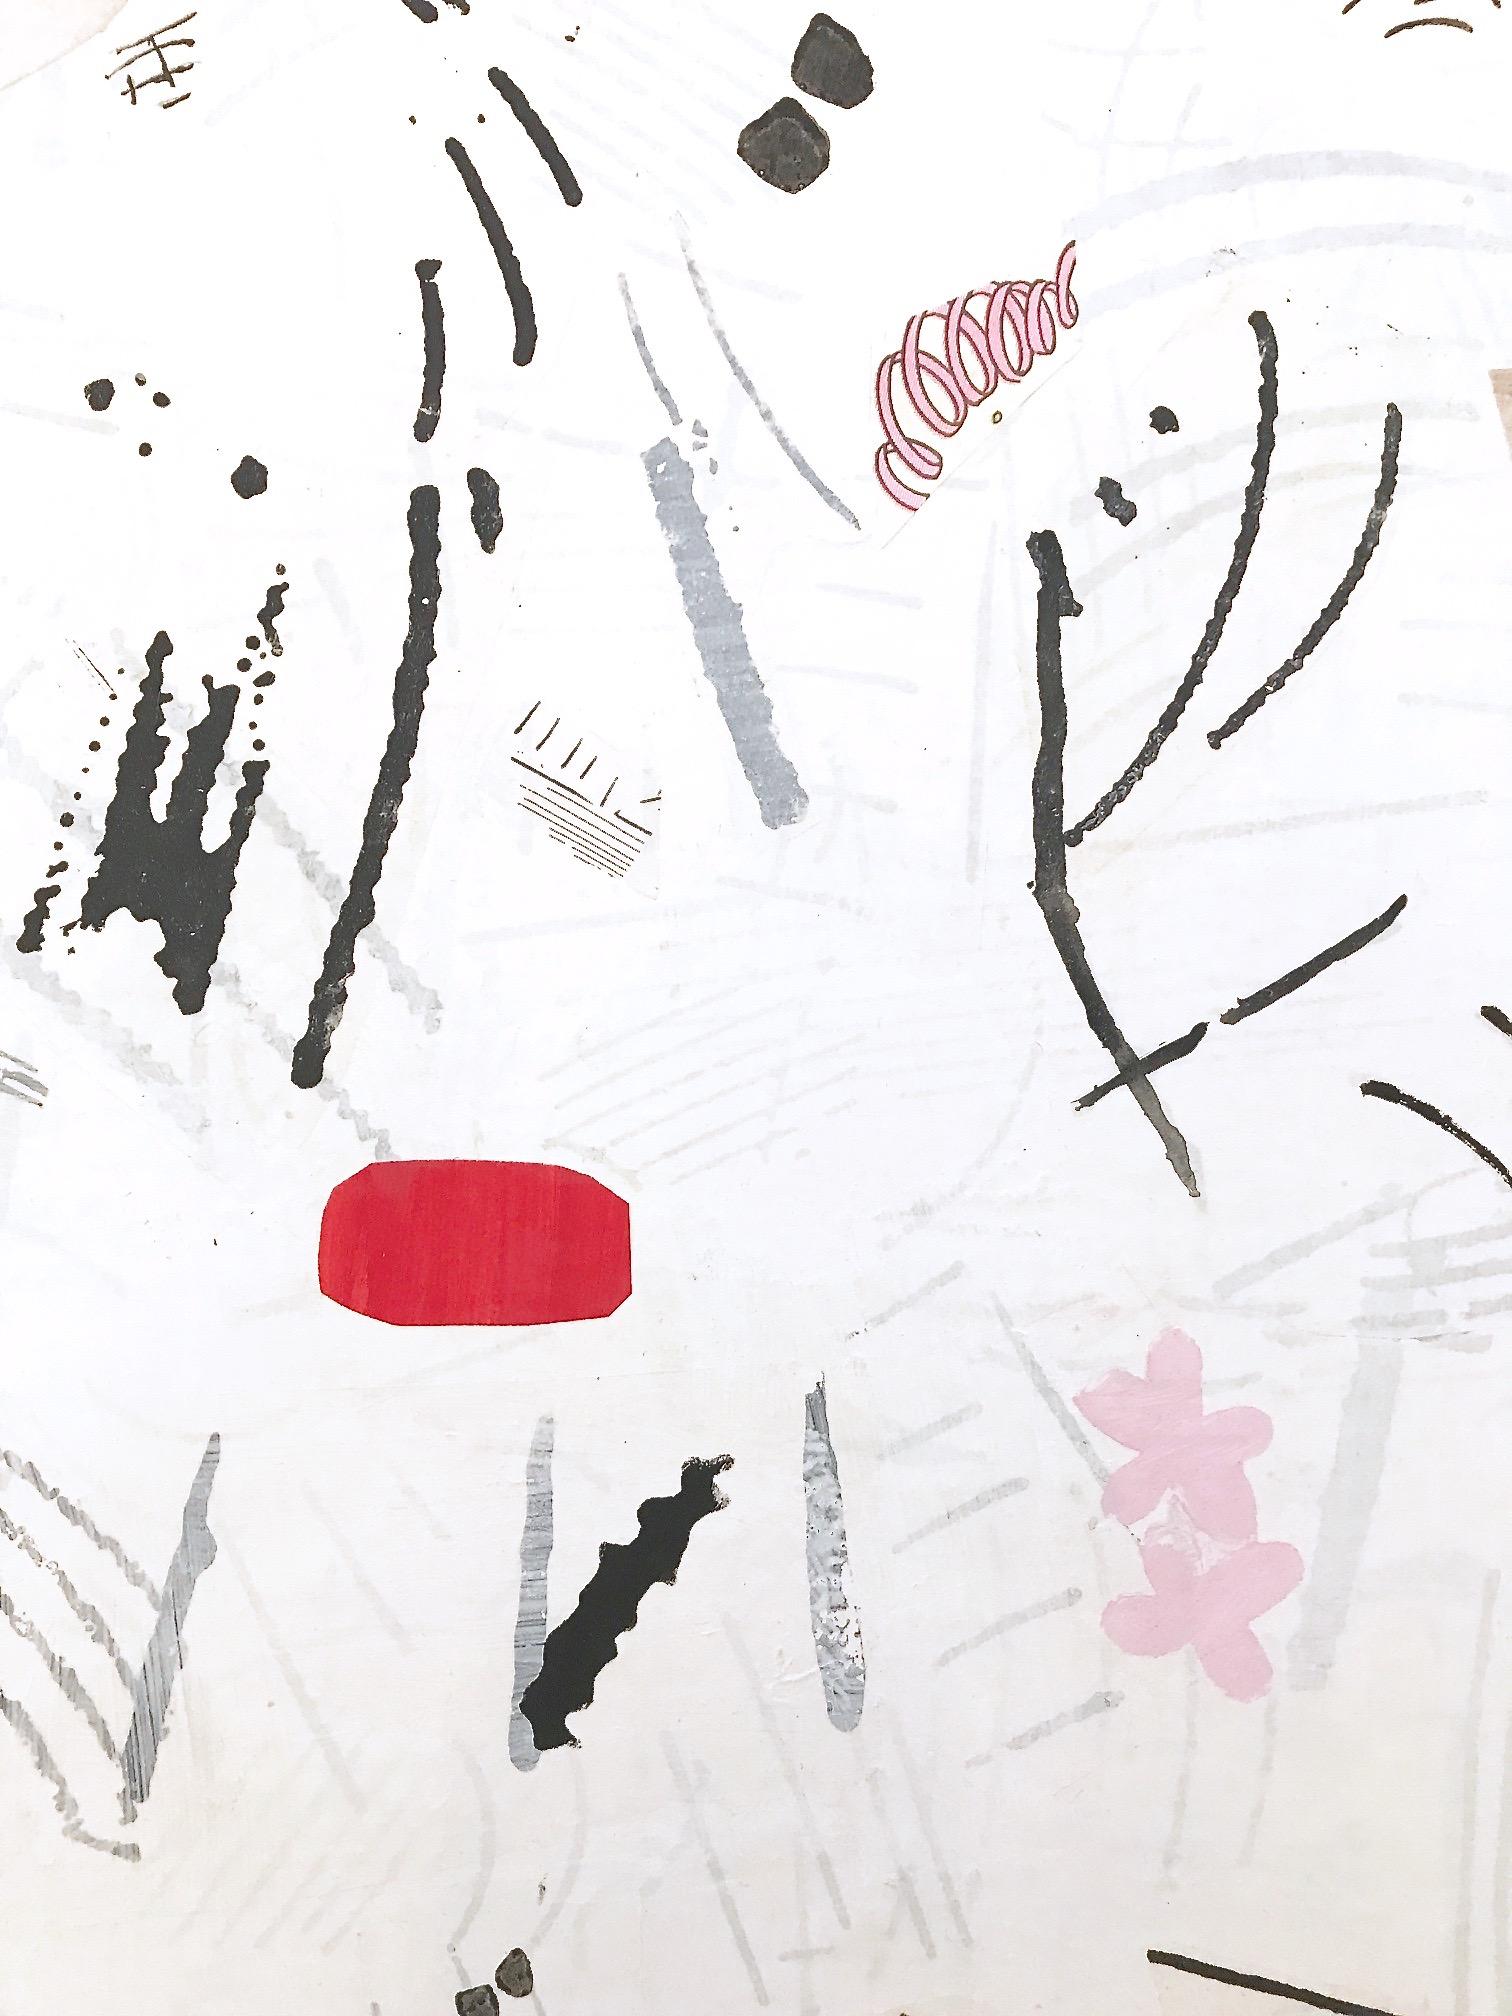 „Ein Morgen im April“   Große Abstraktion von Schwarz, Weiß, Rosa, Rot, Tan und Teal Blau, Flashe und Collage auf Leinwand, 72 x 60 Zoll.  

Dieses Gemälde hat eine sehr ausgefeilte Sensibilität, da es rein abstrakt ist und aus mehreren Schichten